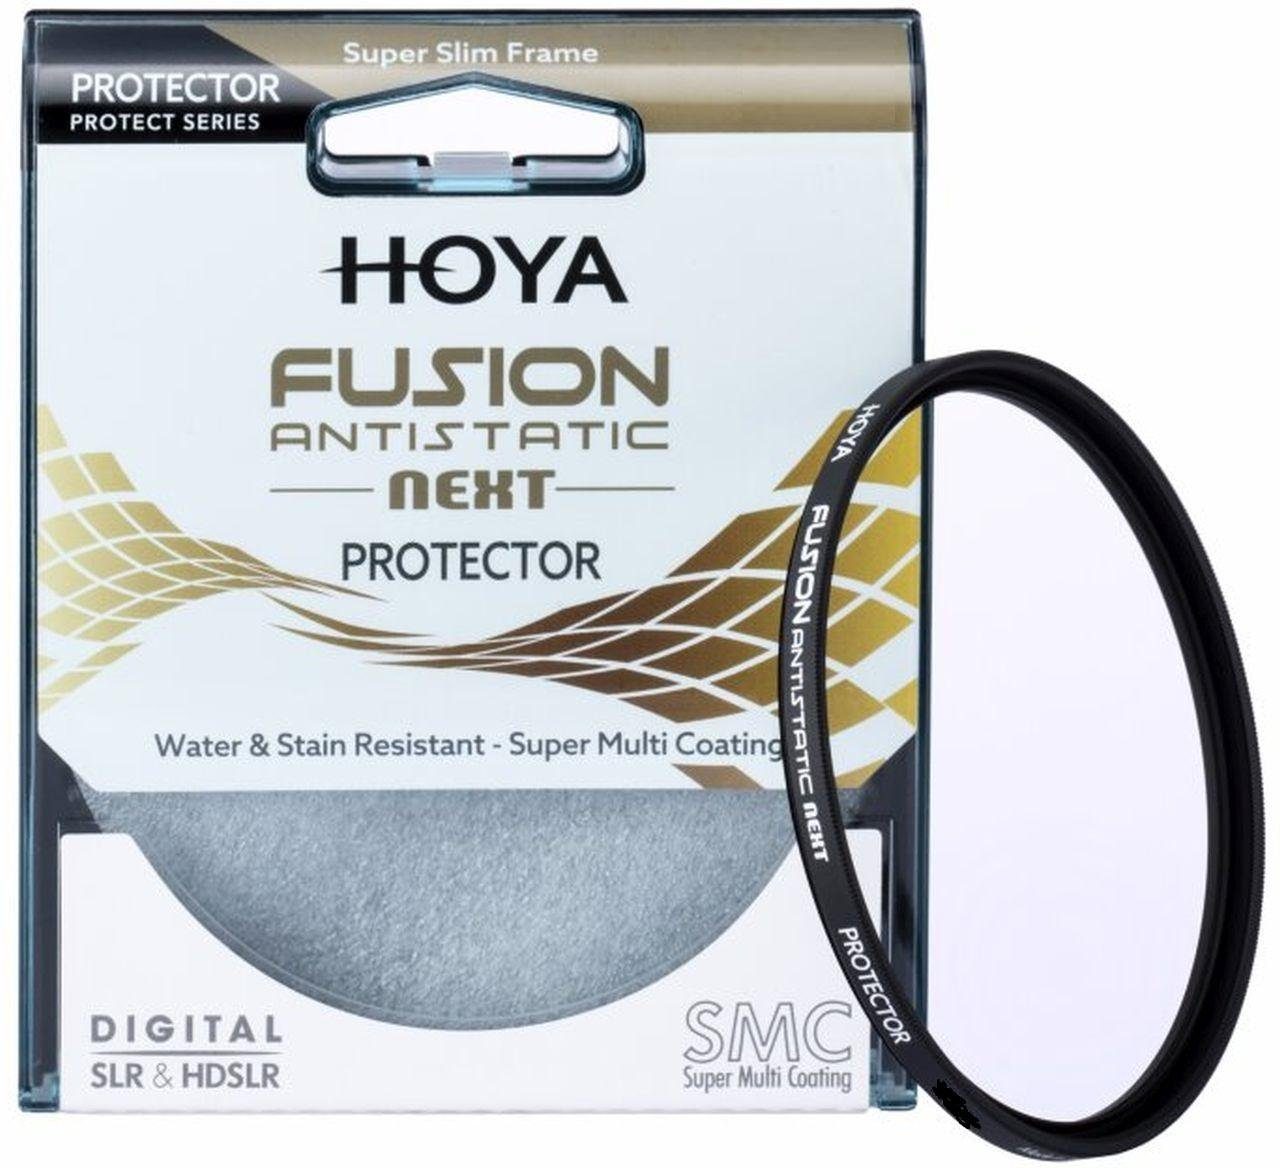 Hoya Fusion Antistatic Next Objektivzubehör 67mm Protector